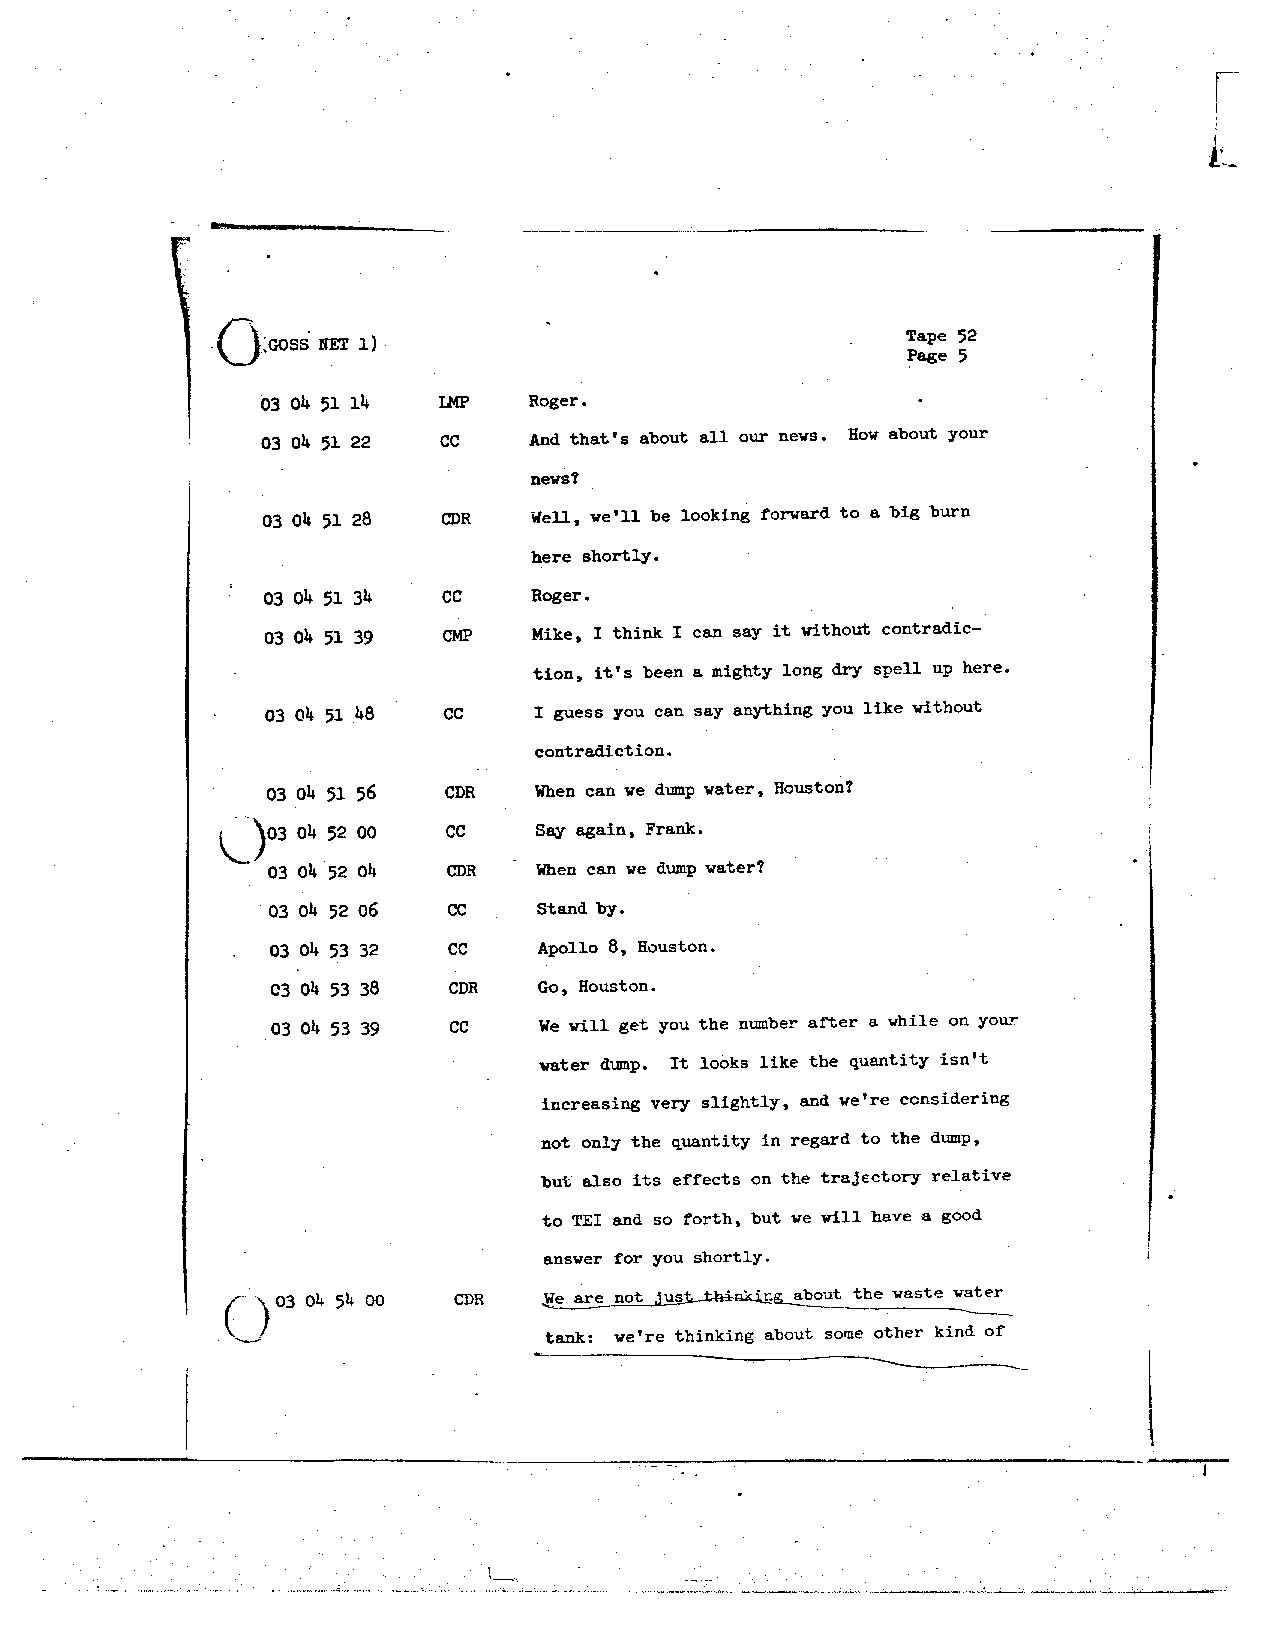 Page 413 of Apollo 8’s original transcript